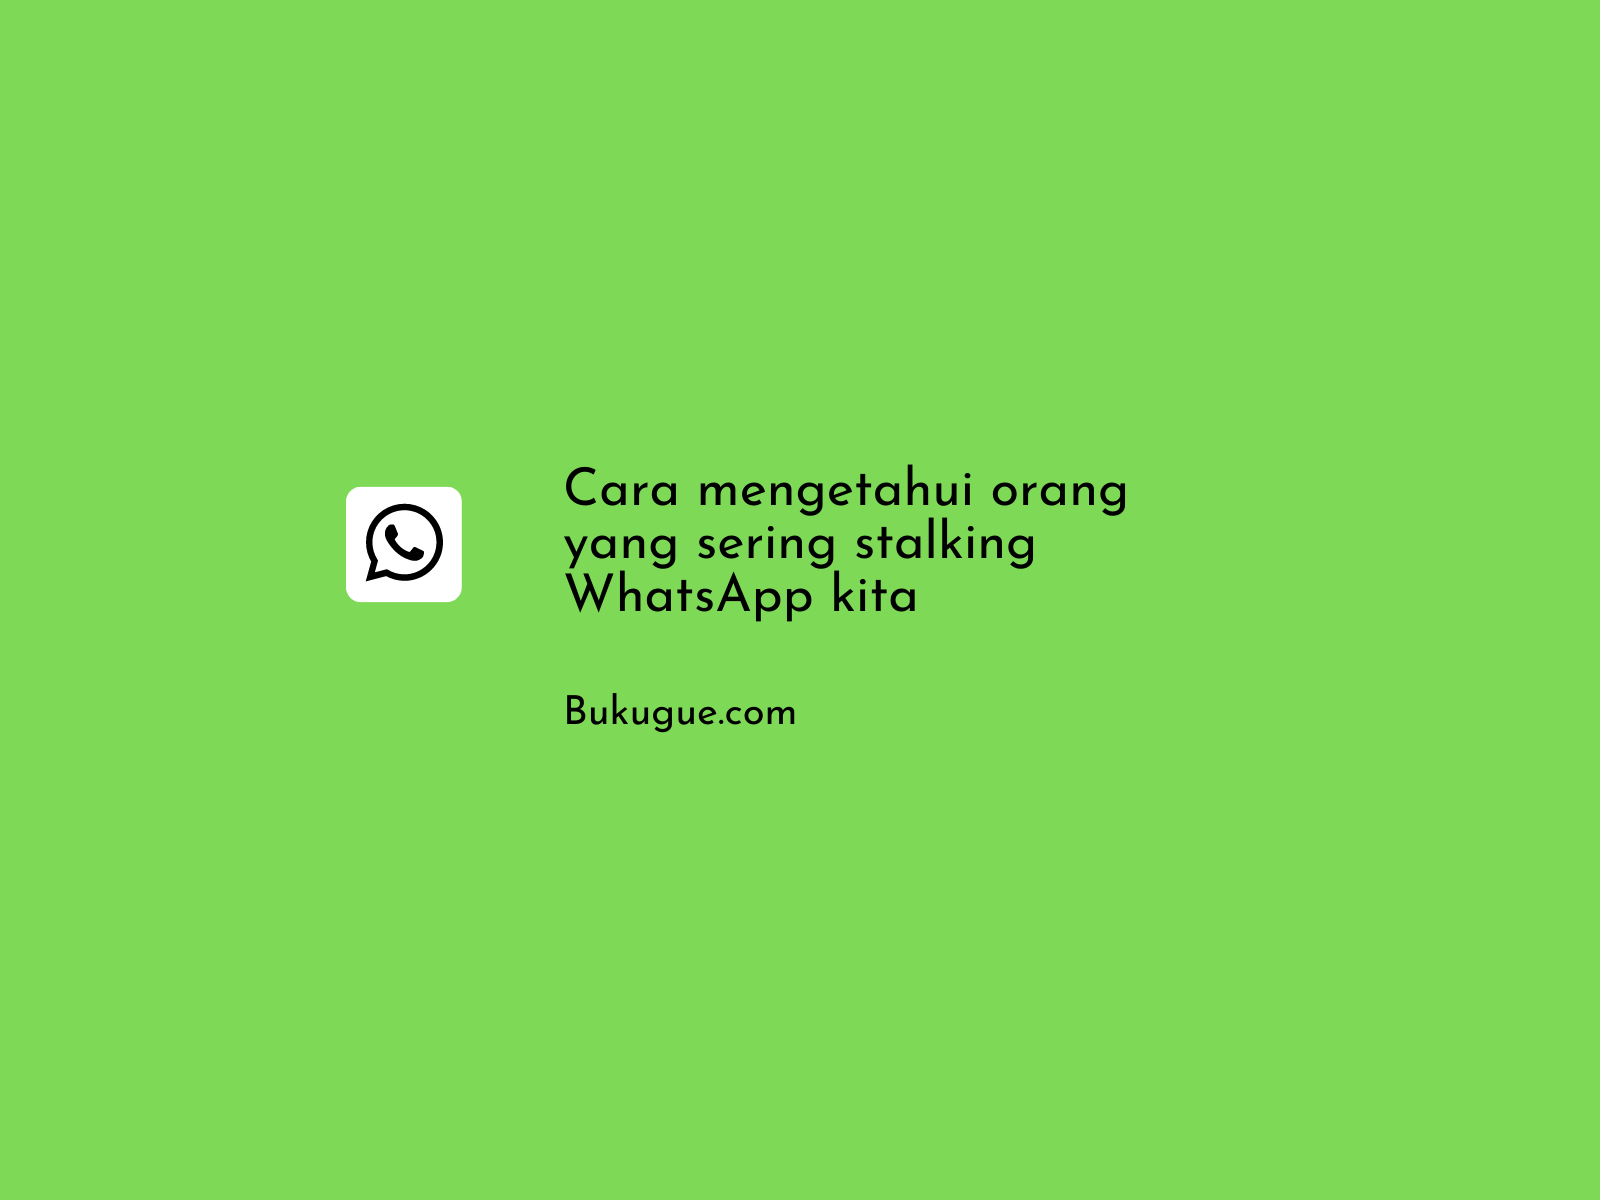 Cara mengetahui orang yang sering stalking WhatsApp kita